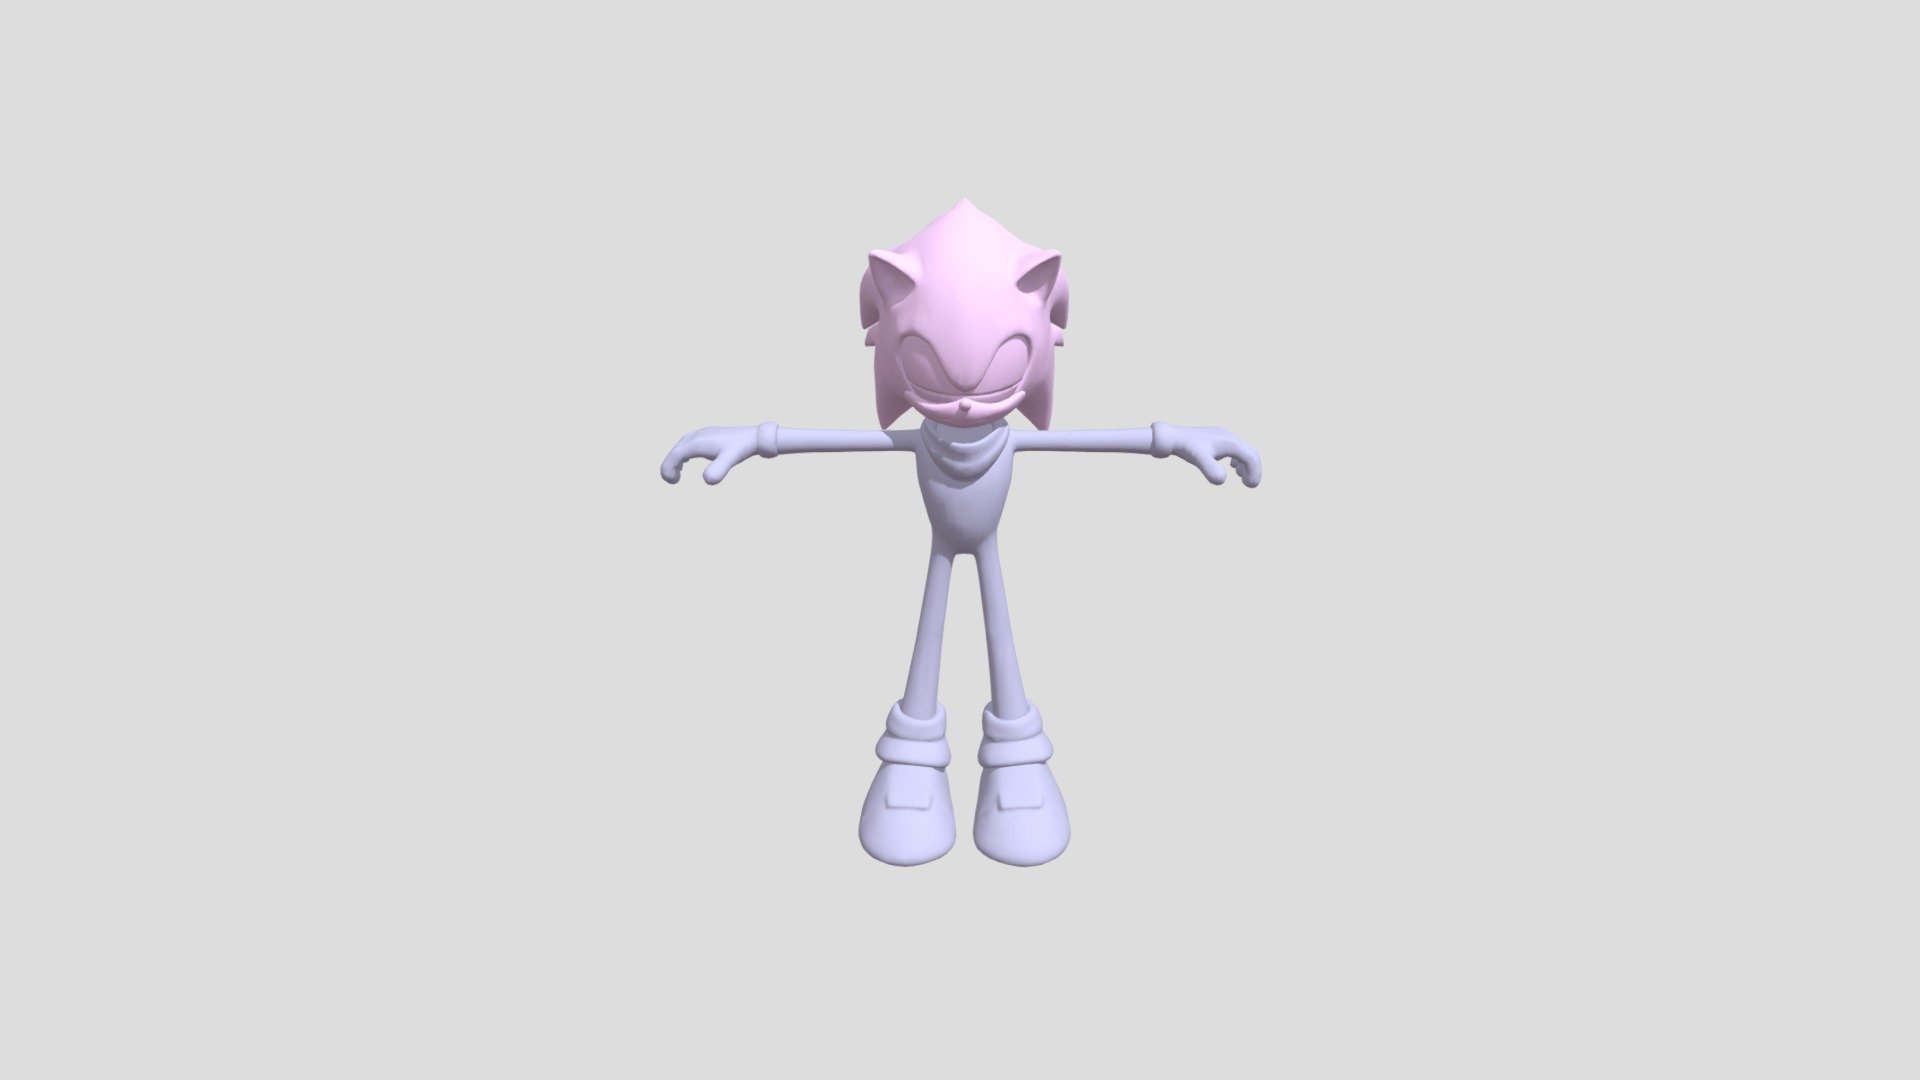 Sonicboom 3D models - Sketchfab